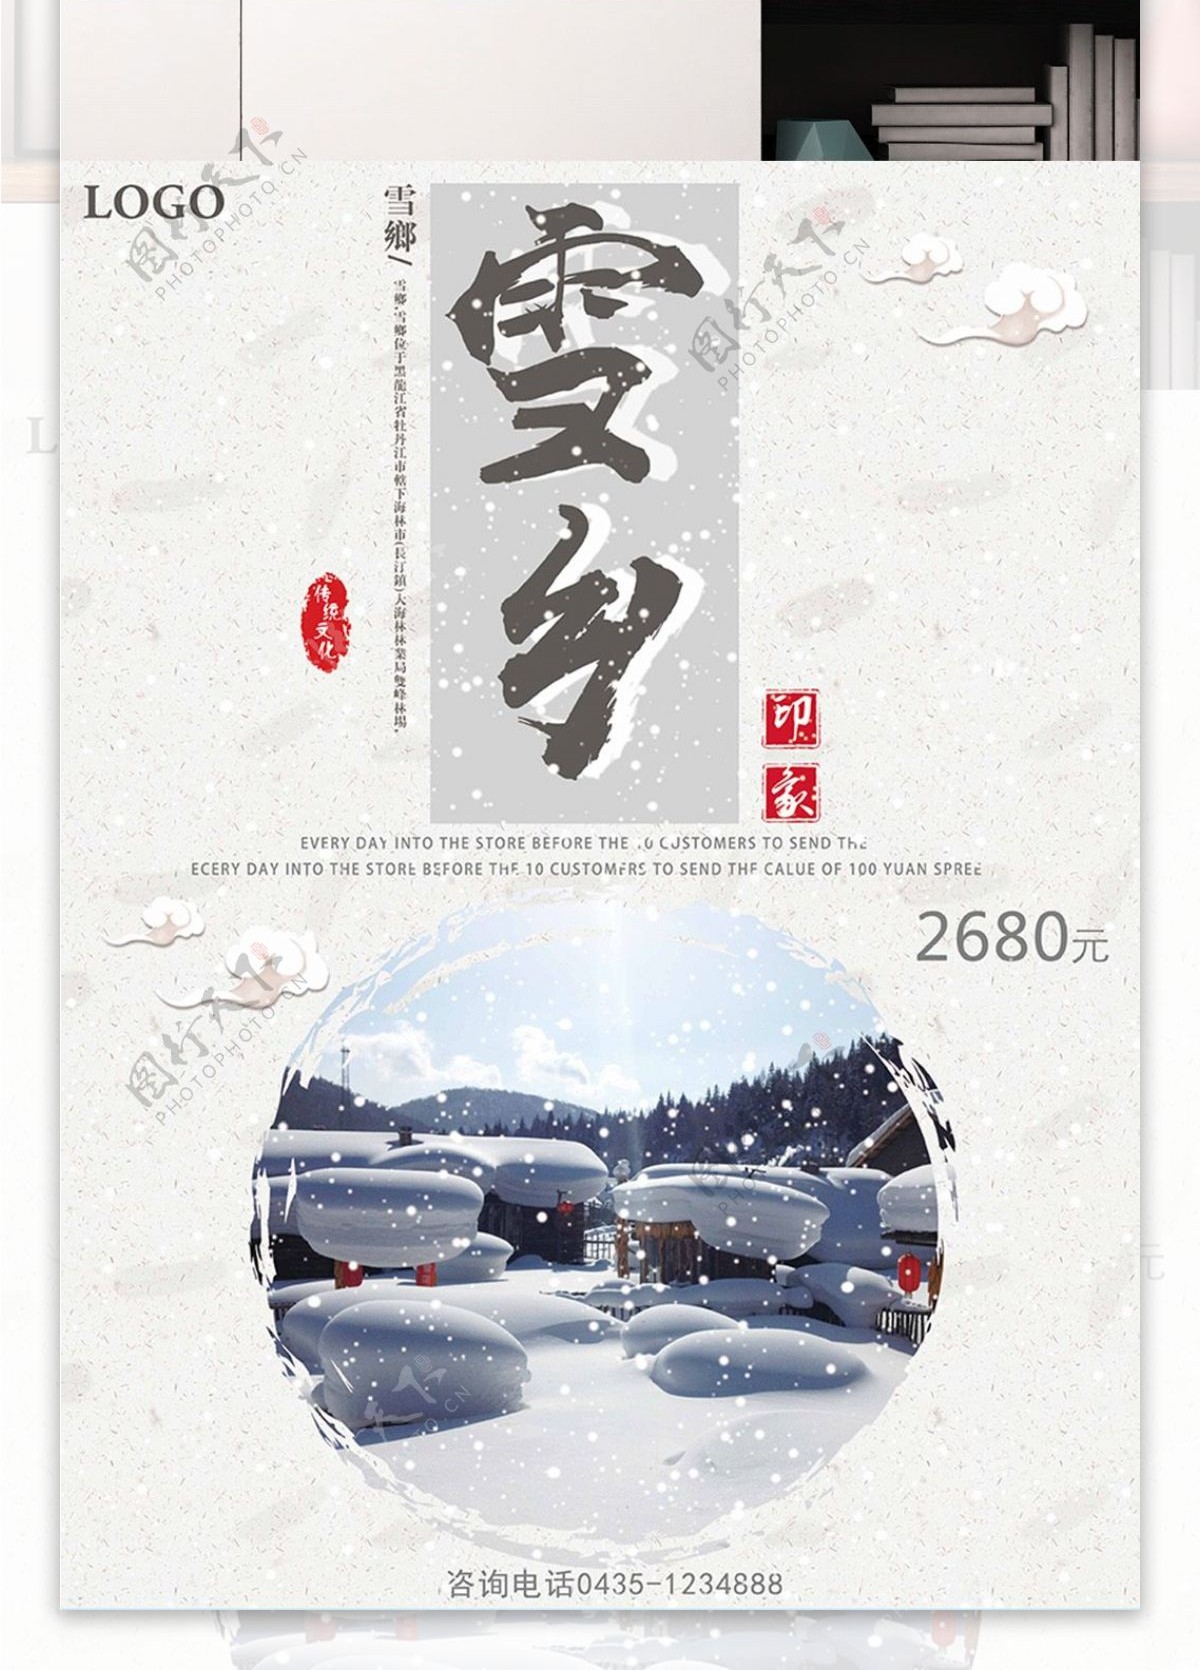 白色背景简约大气中国风美丽雪乡宣传海报